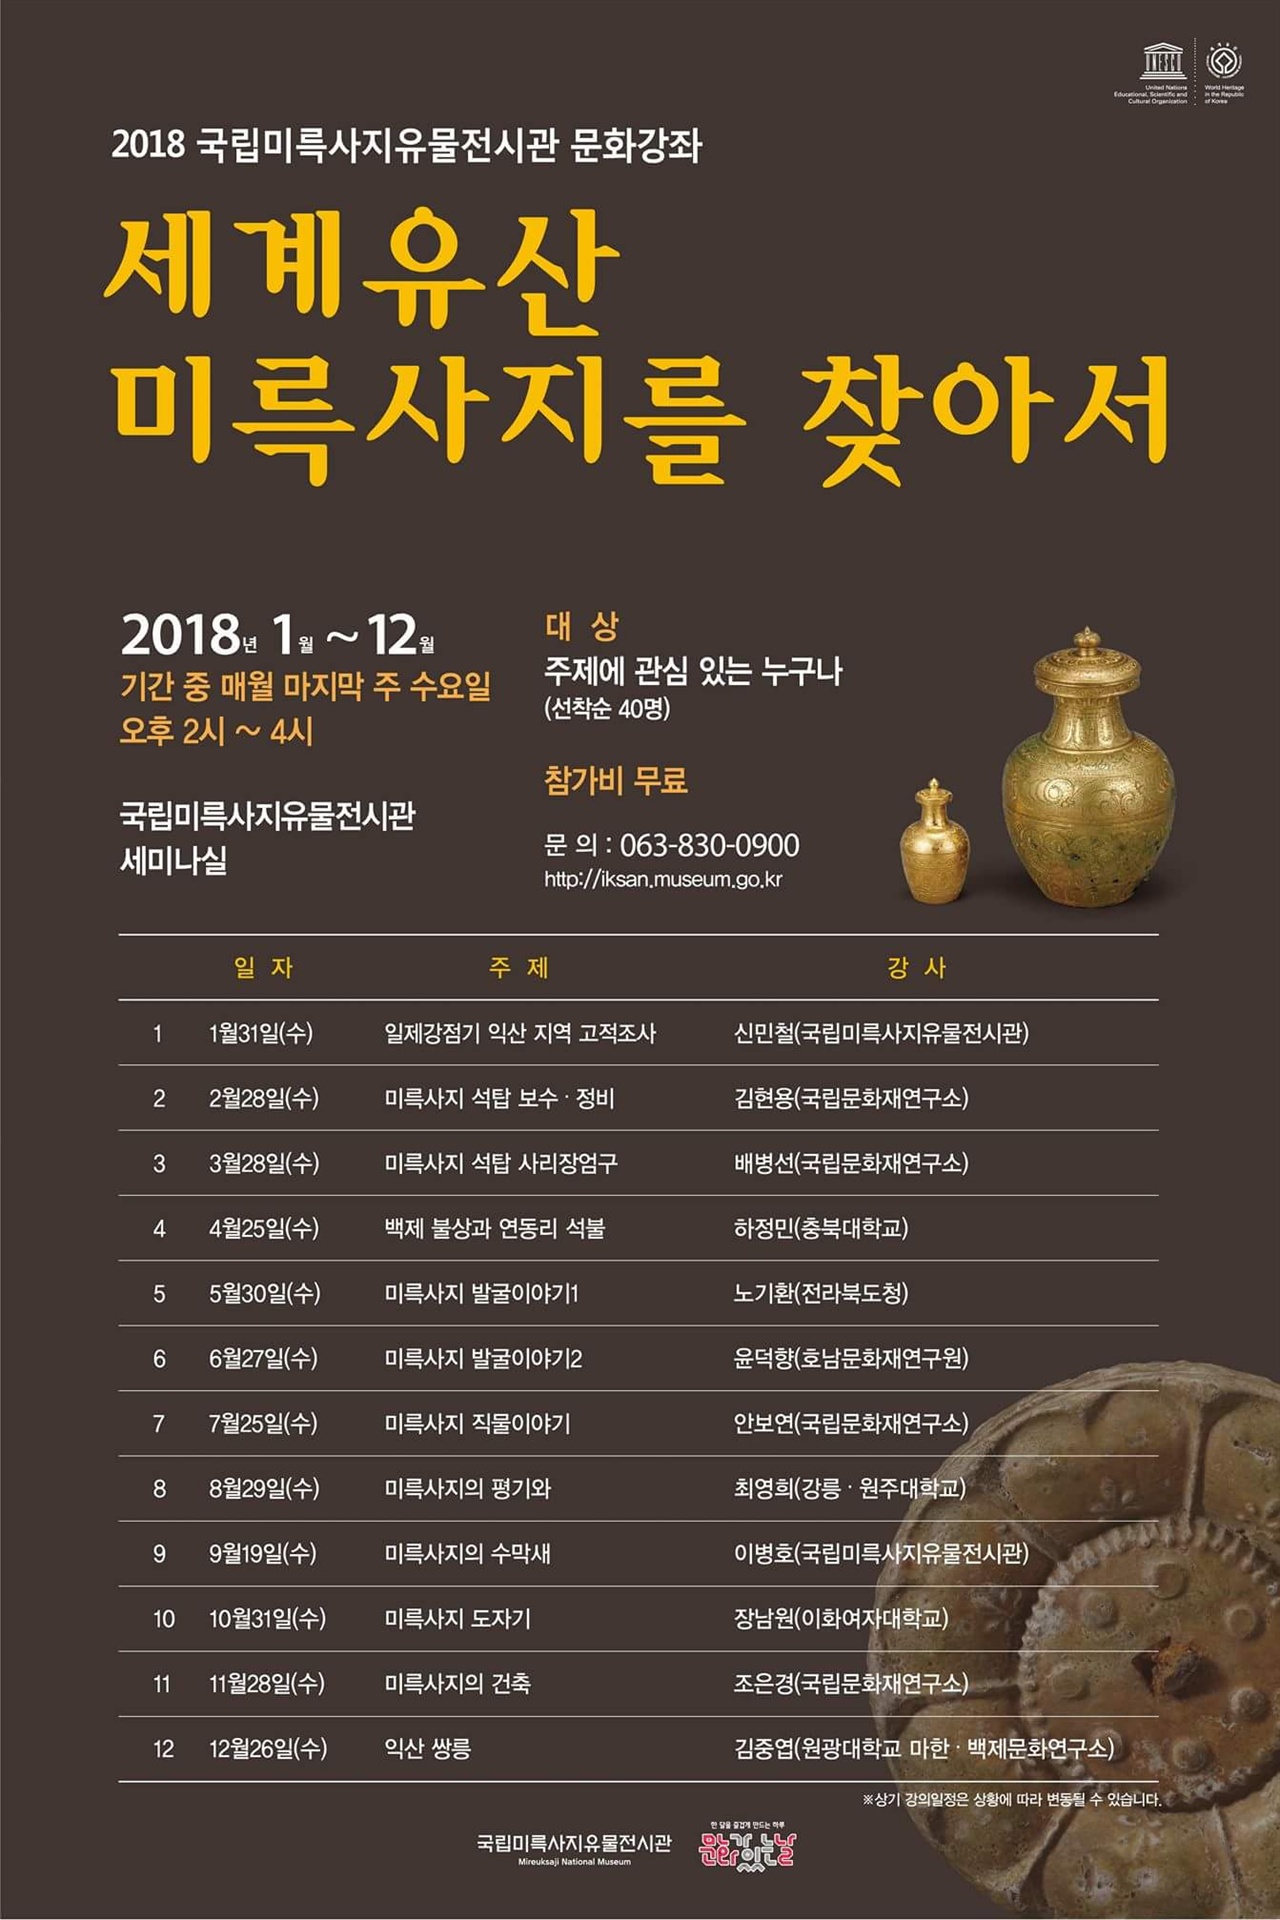 2018년 국립미륵사지 유물전시관에서 진행되는 문화강좌 프로그램